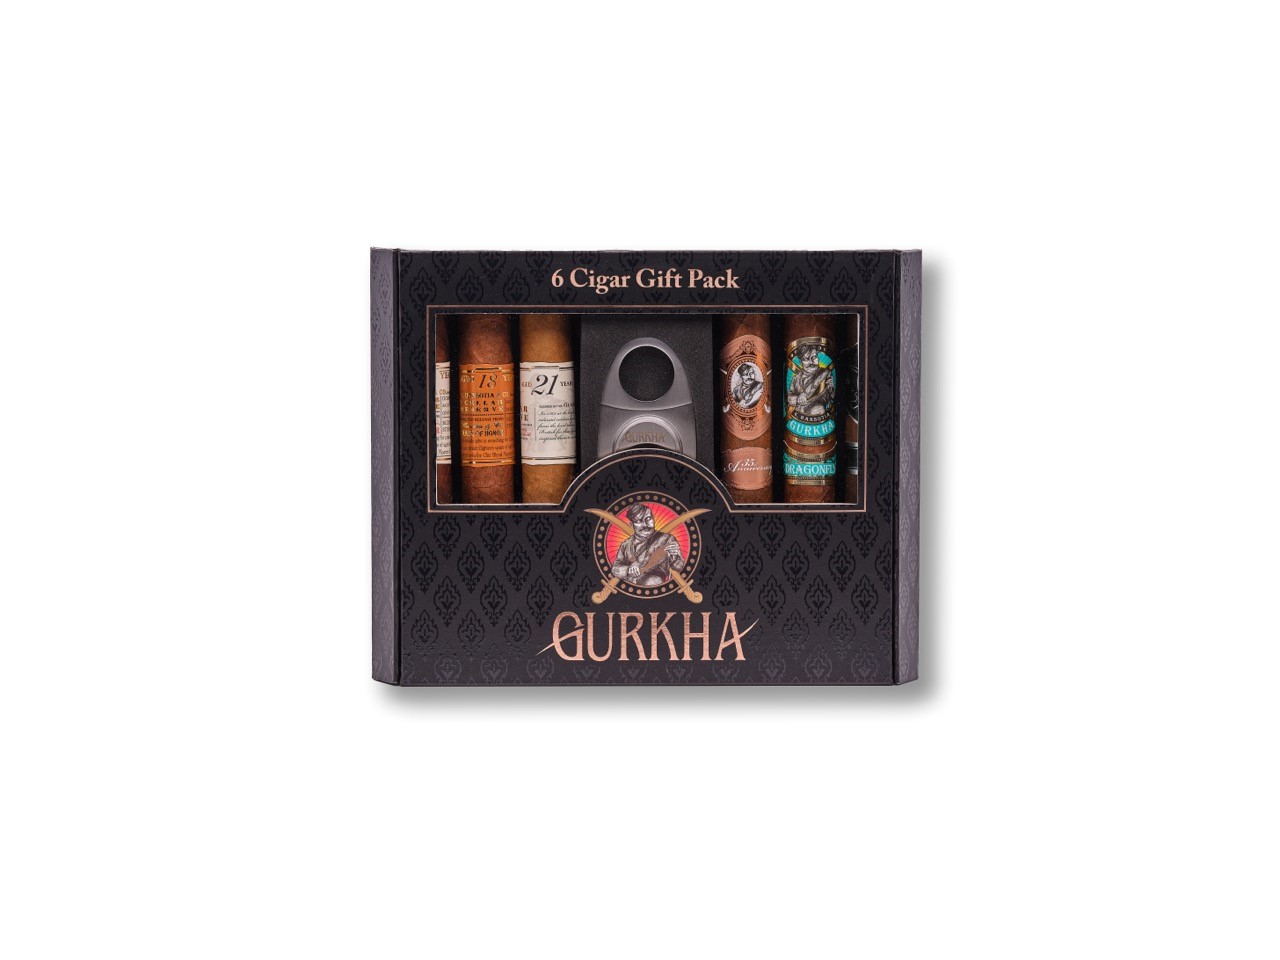 6 cigar gift pack gurkha sampler